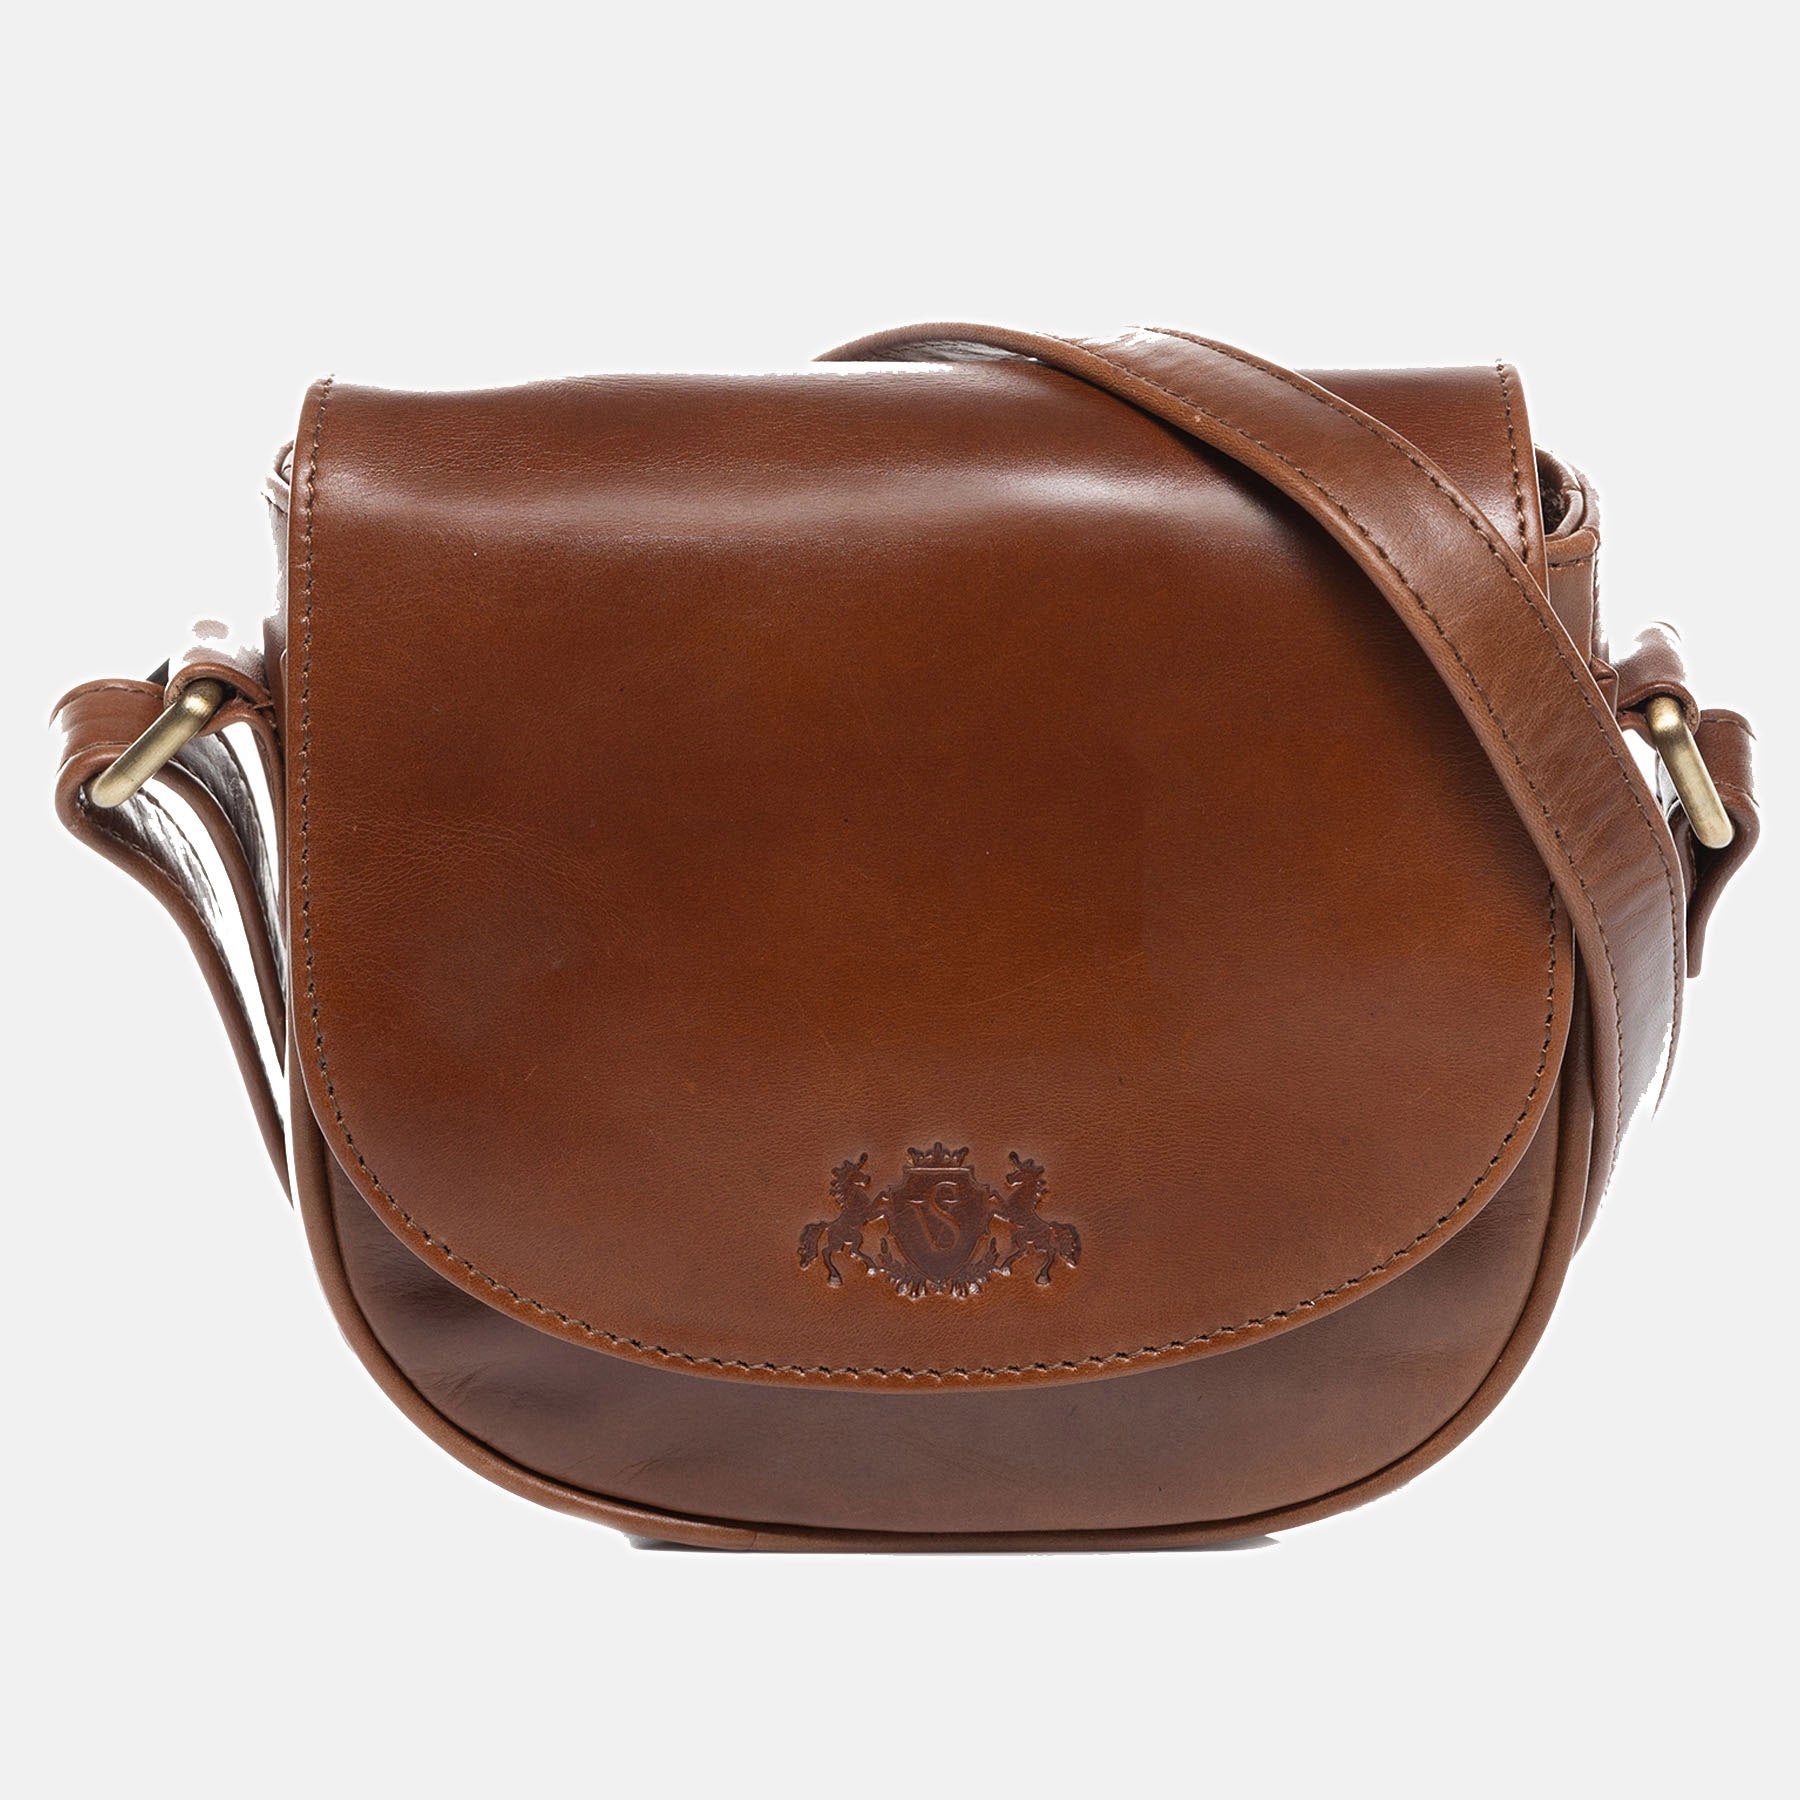 Shoulder bag BRIGHTON natural leather light brown